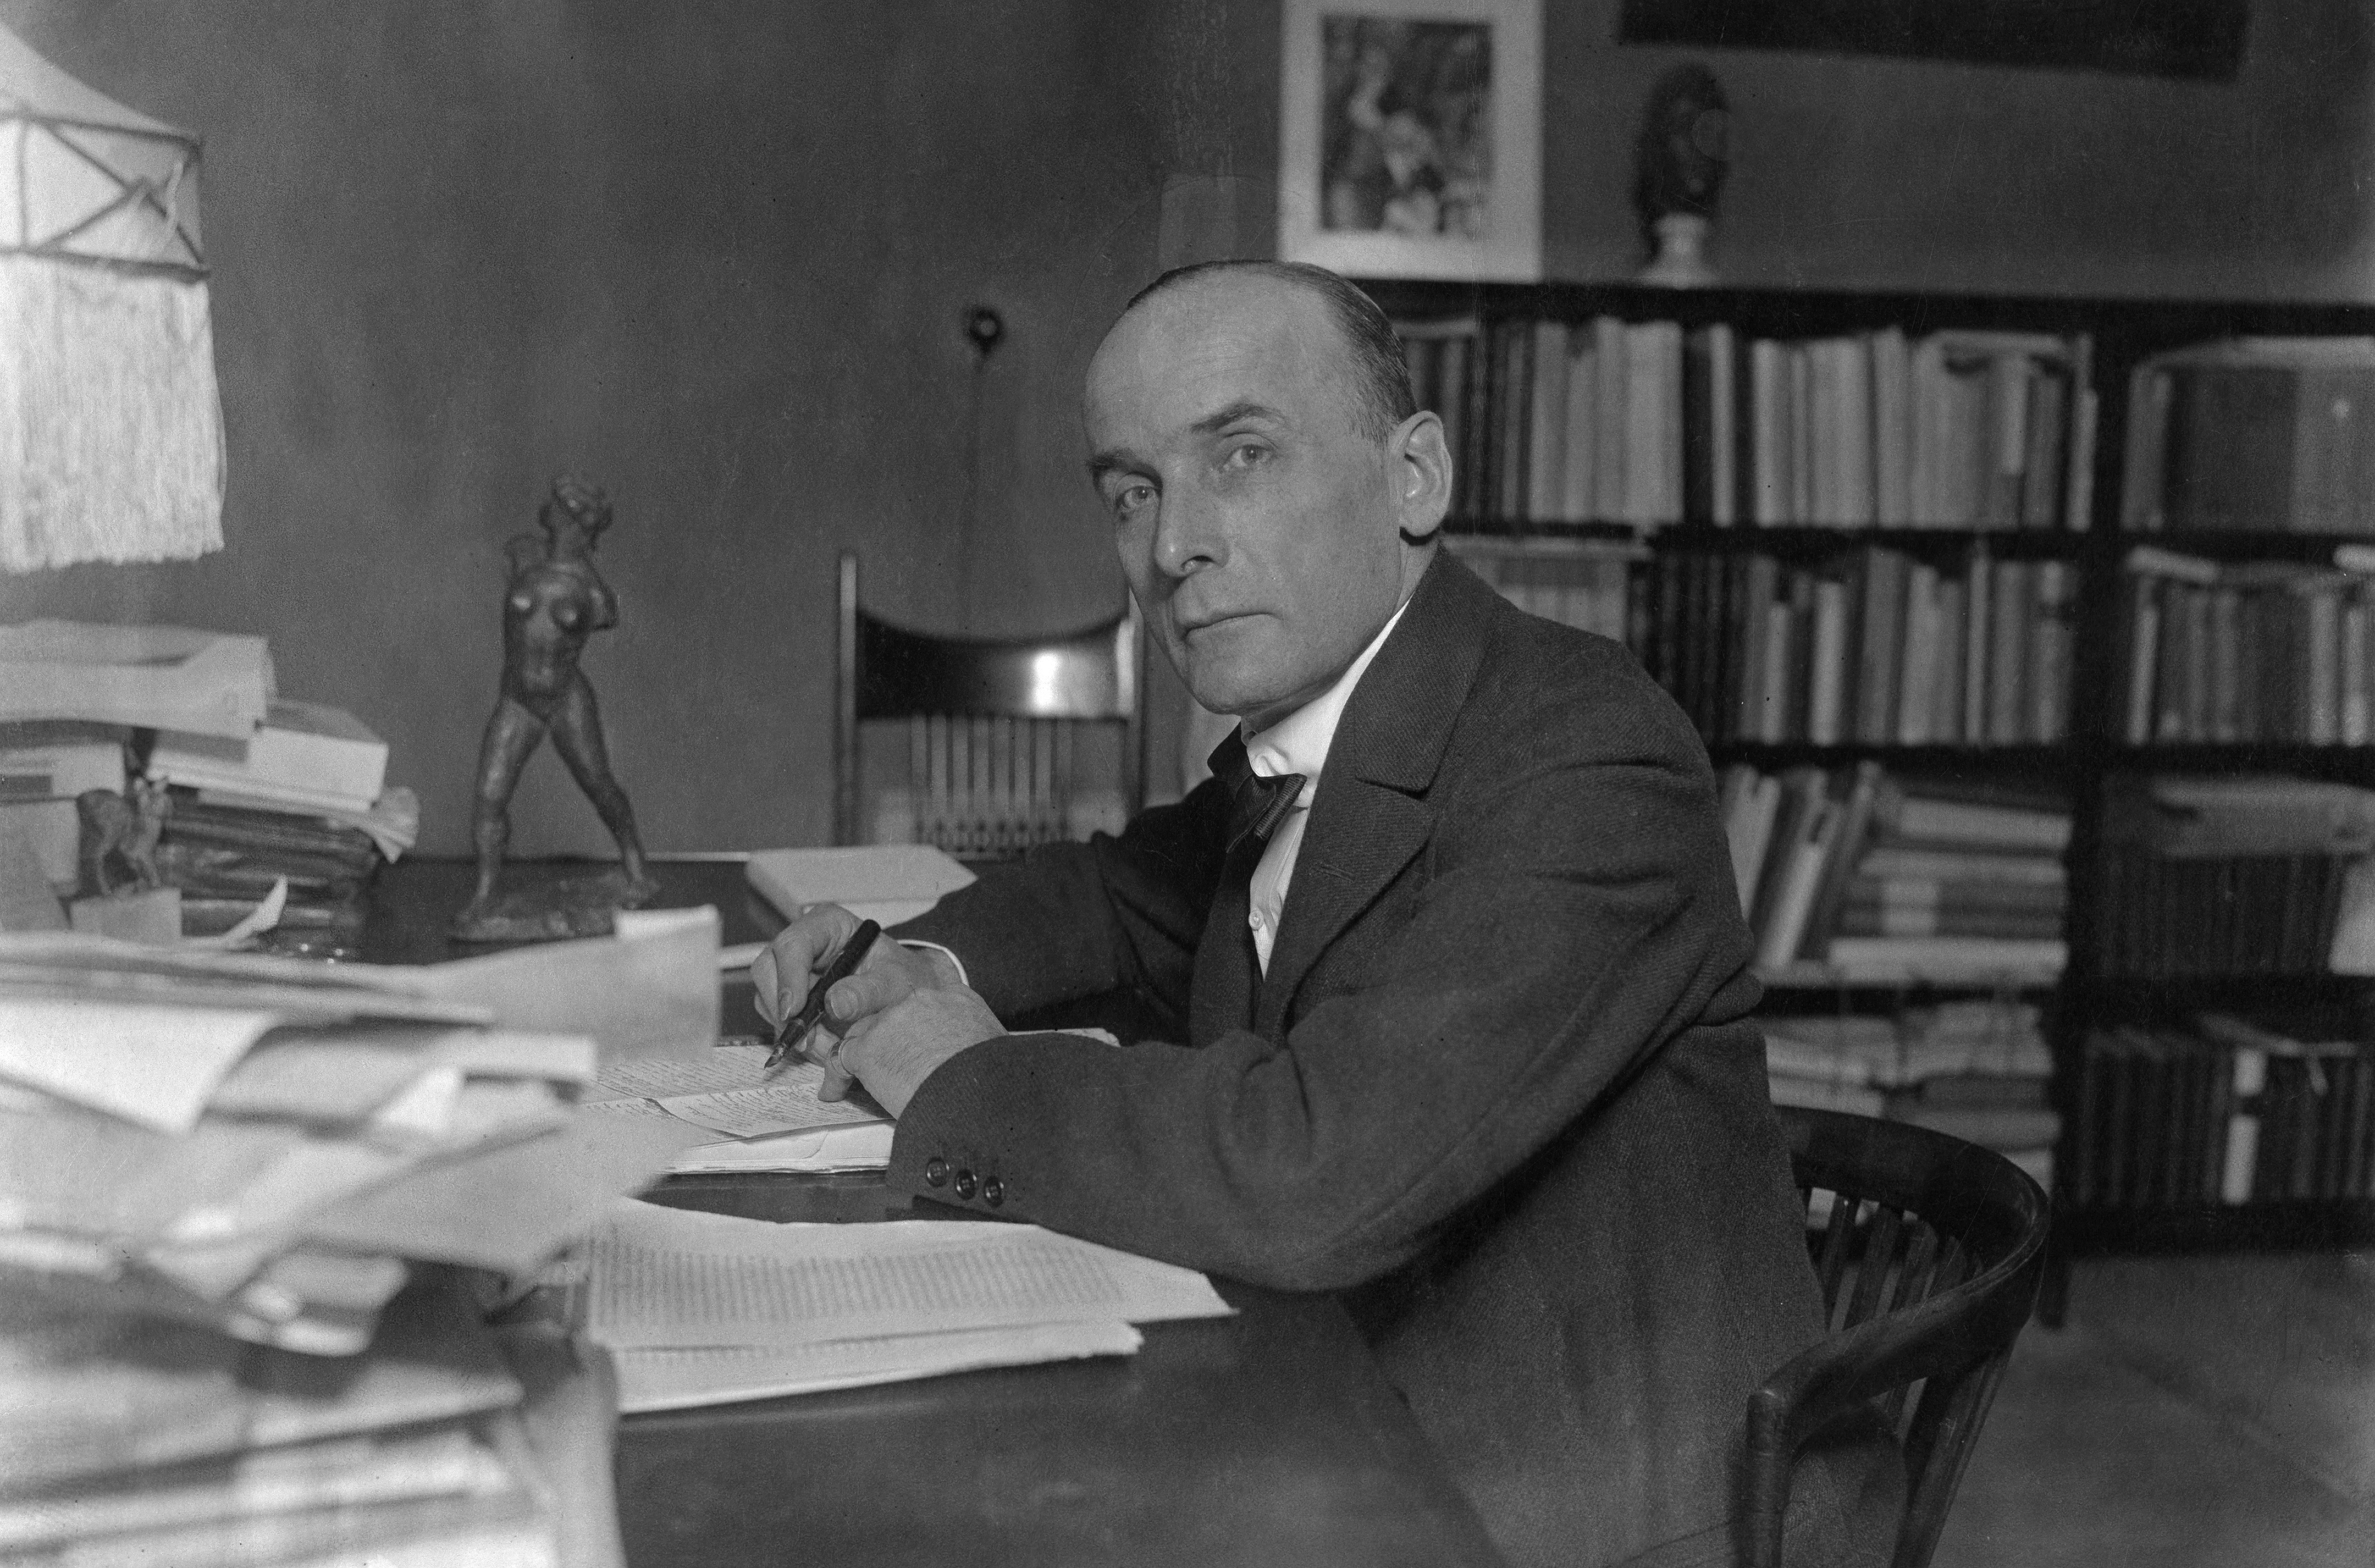 Harry Graf Kessler, Porträt am Schreibtisch seiner Wohnung Köthenerstr. 28, Berlin, 1919 (Ausschnitt) (Foto: ullstein bild)